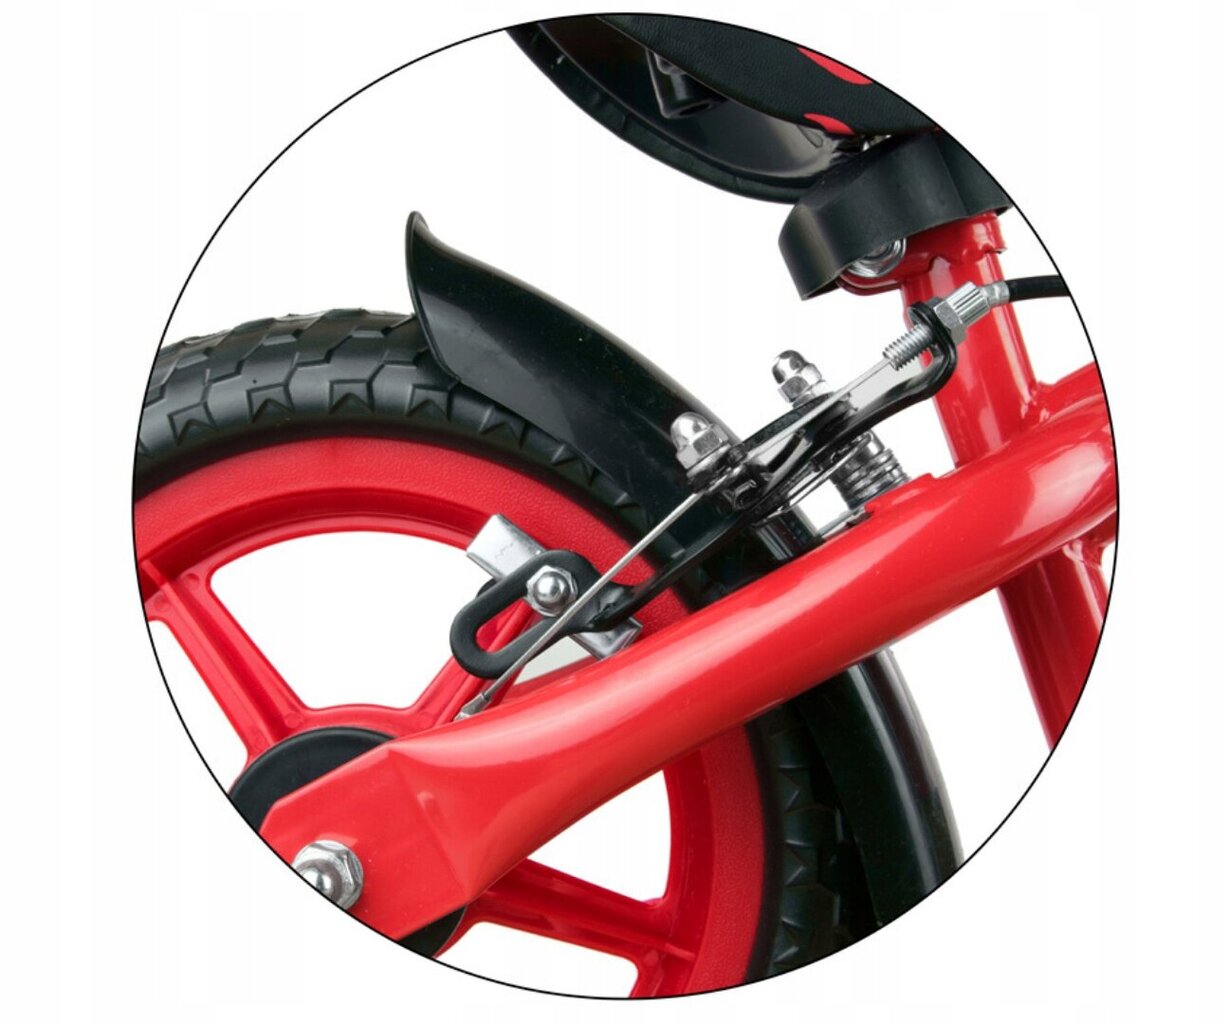 Balansinis dviratis Milly Mally Dragon, raudonas/juodas цена и информация | Balansiniai dviratukai | pigu.lt